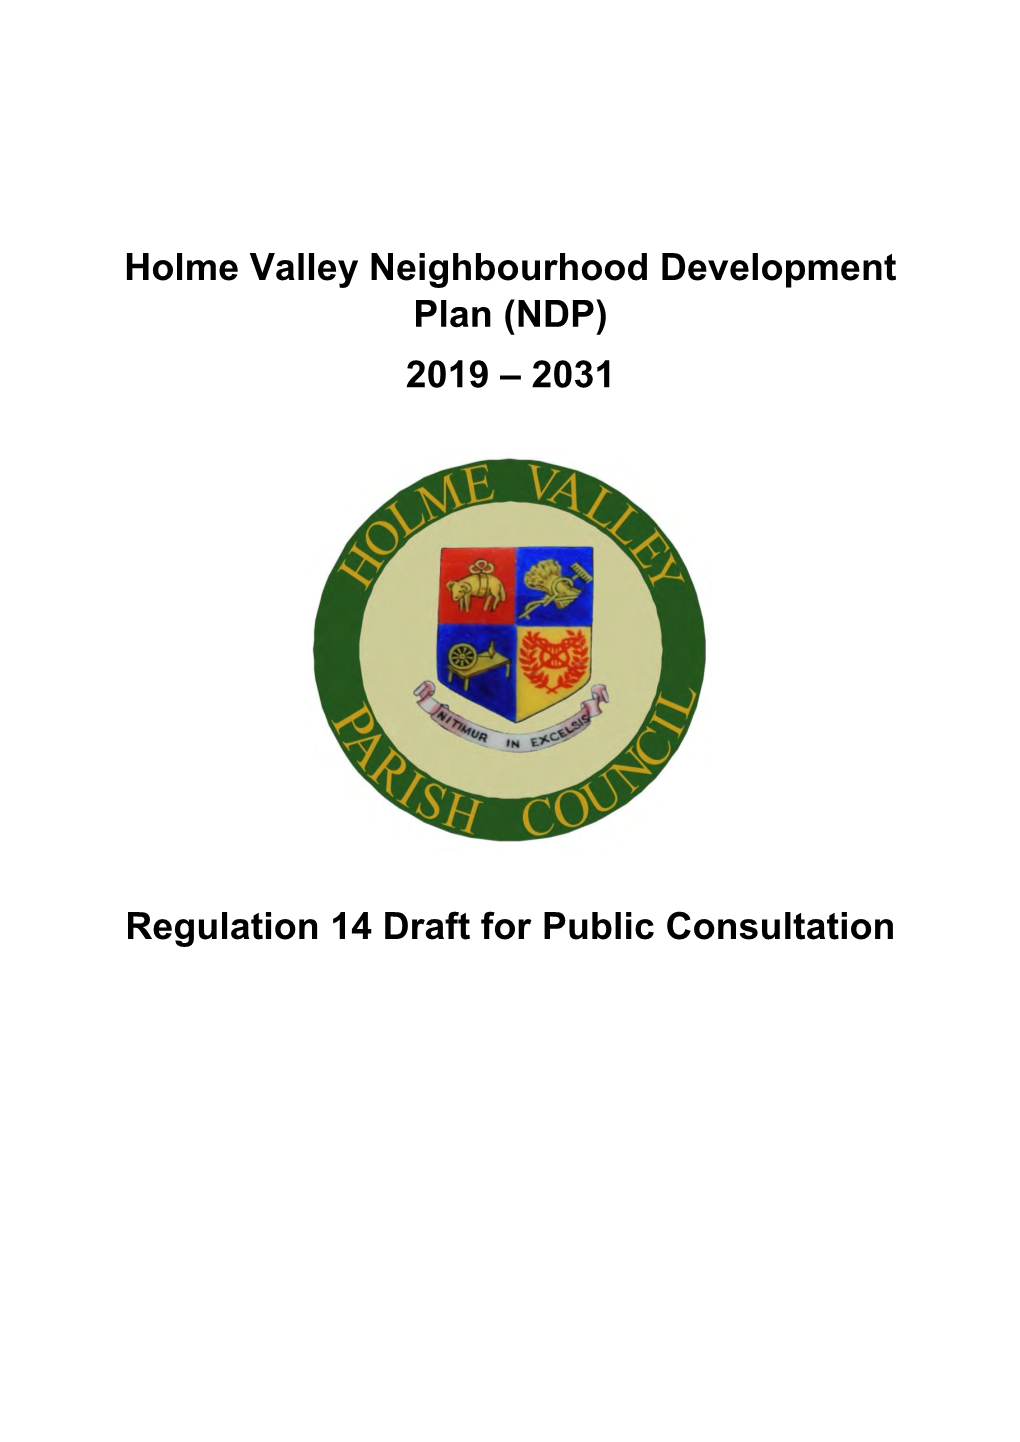 Holme Valley Neighbourhood Development Plan (NDP) 2019 – 2031